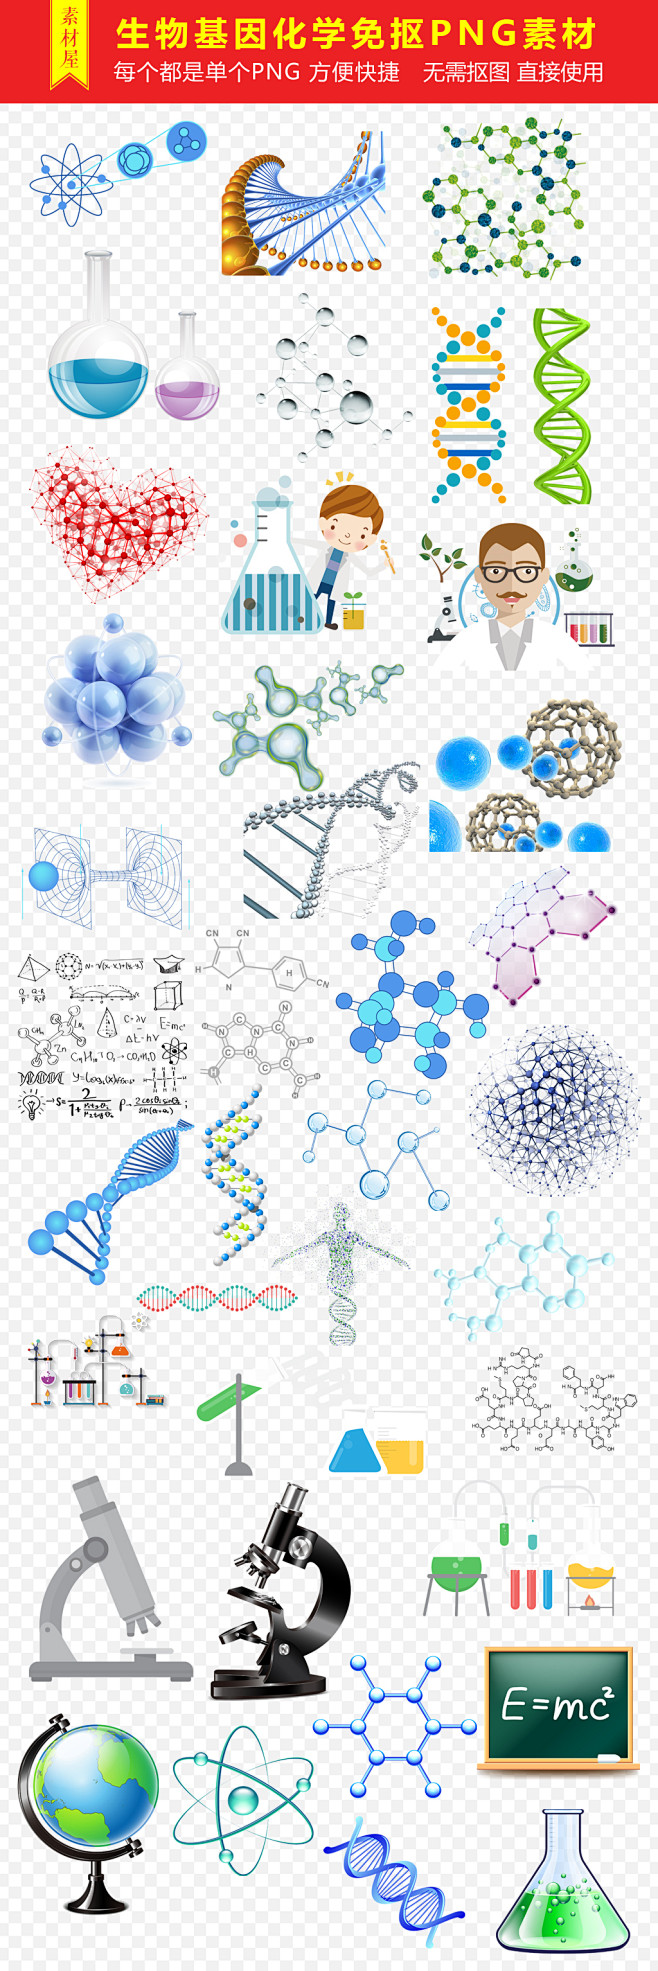 生物基因化学医疗科技元素png海报素材